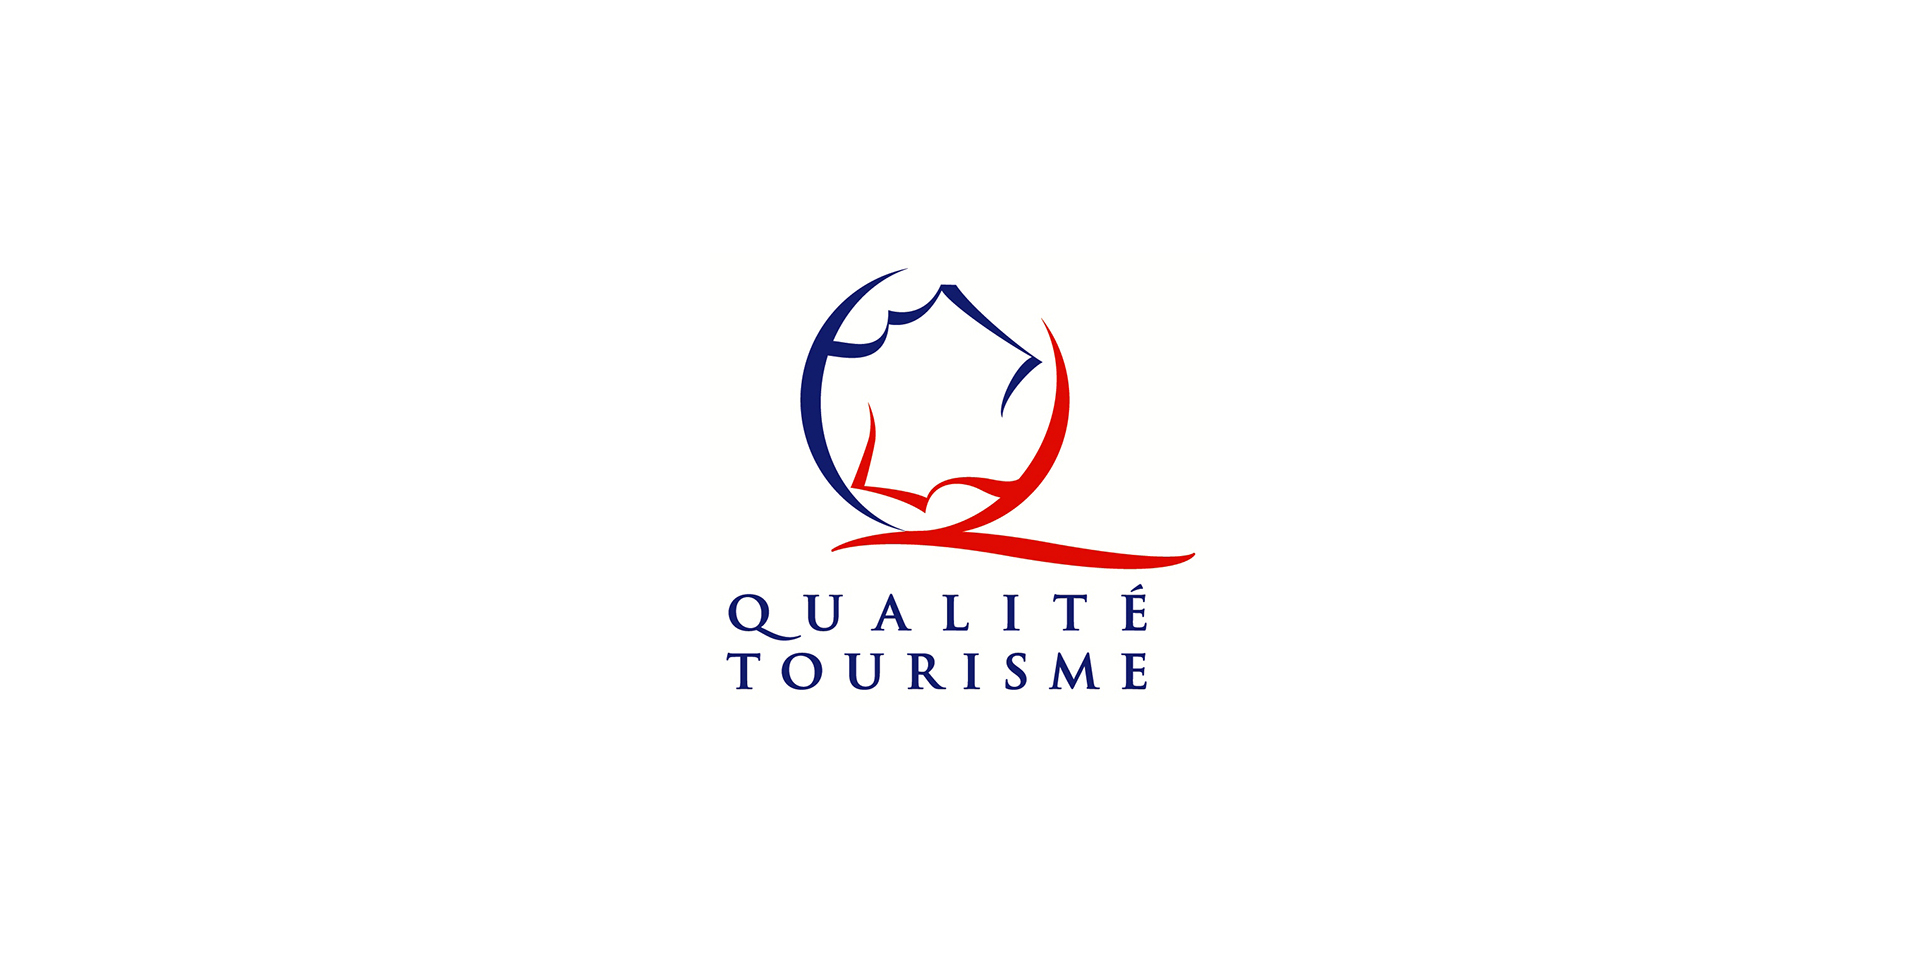 LogoV2_QualiteTourisme_1920x960px